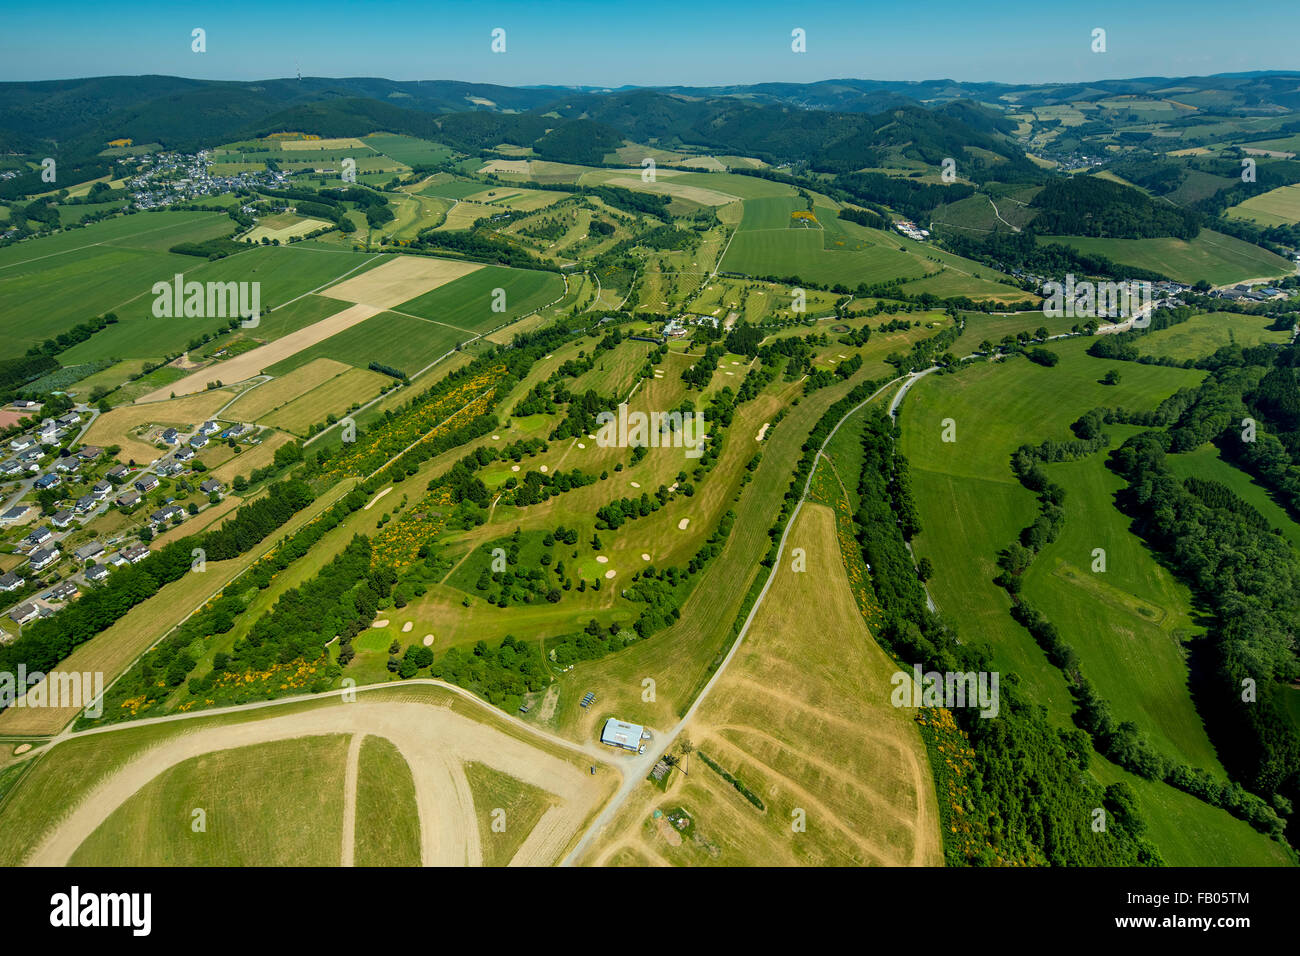 Golfclub Schmallenberg, Green, Golf Course, Schmallenberg, Sauerland, Hochsauerland region, North Rhine-Westphalia, Germany, Stock Photo